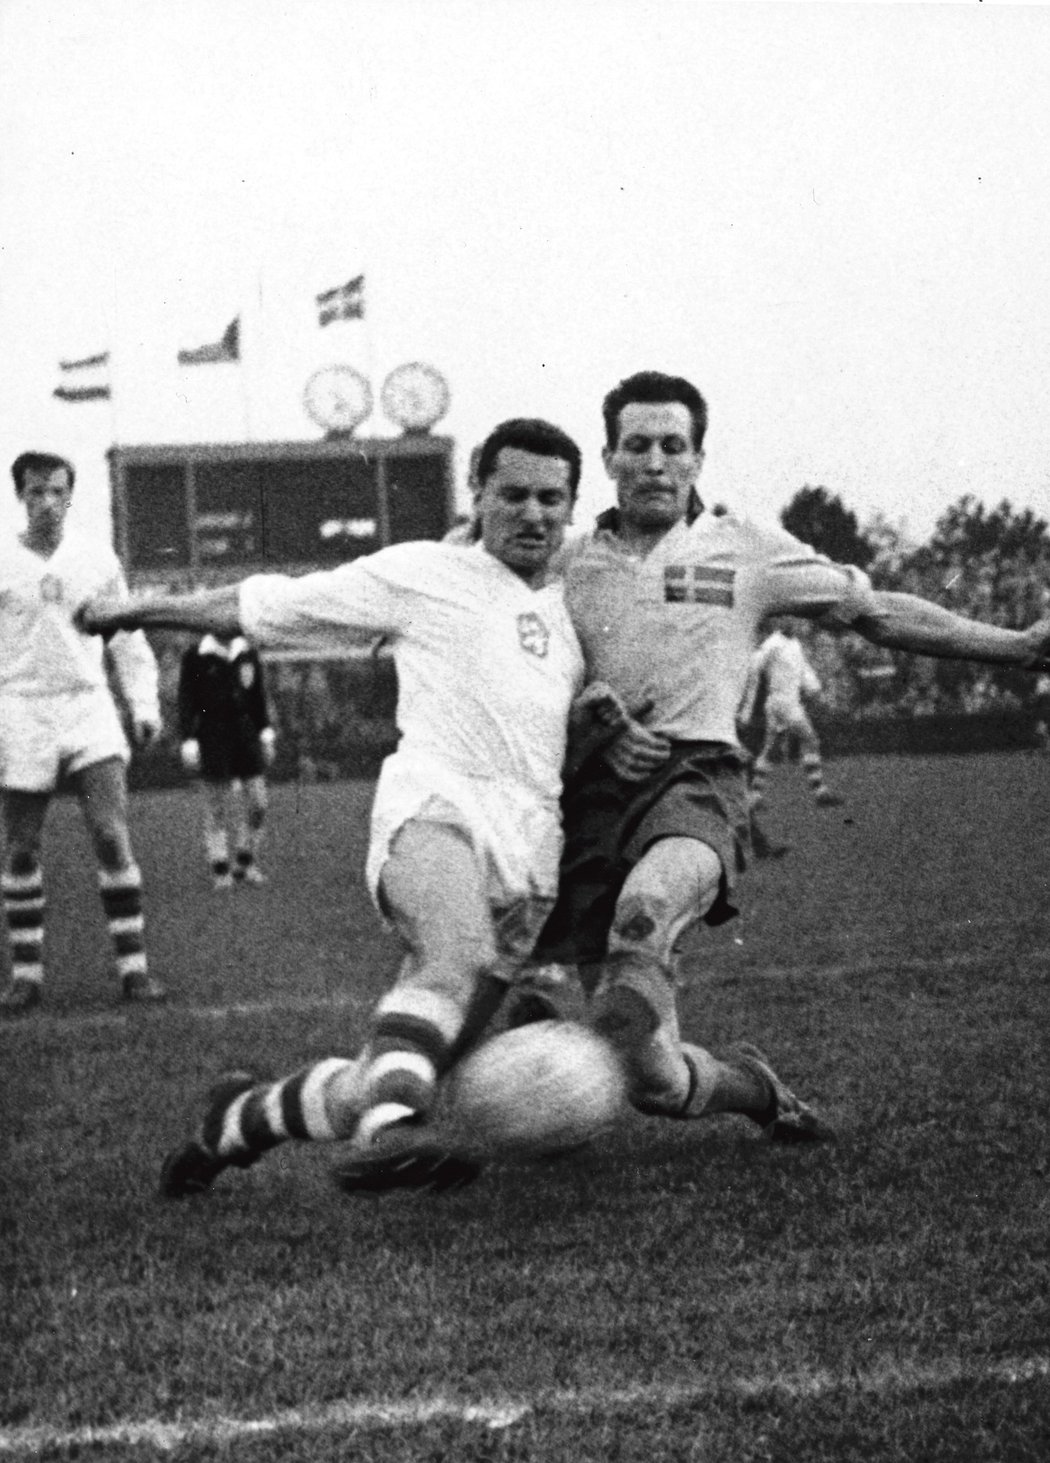 Strahov, rok 1961: 25 tisíc diváků a výhra 2:1 nad Švédy v přátelském utkání. Vítězný gól vstřelil vicemistrům světa Josef Kadraba.